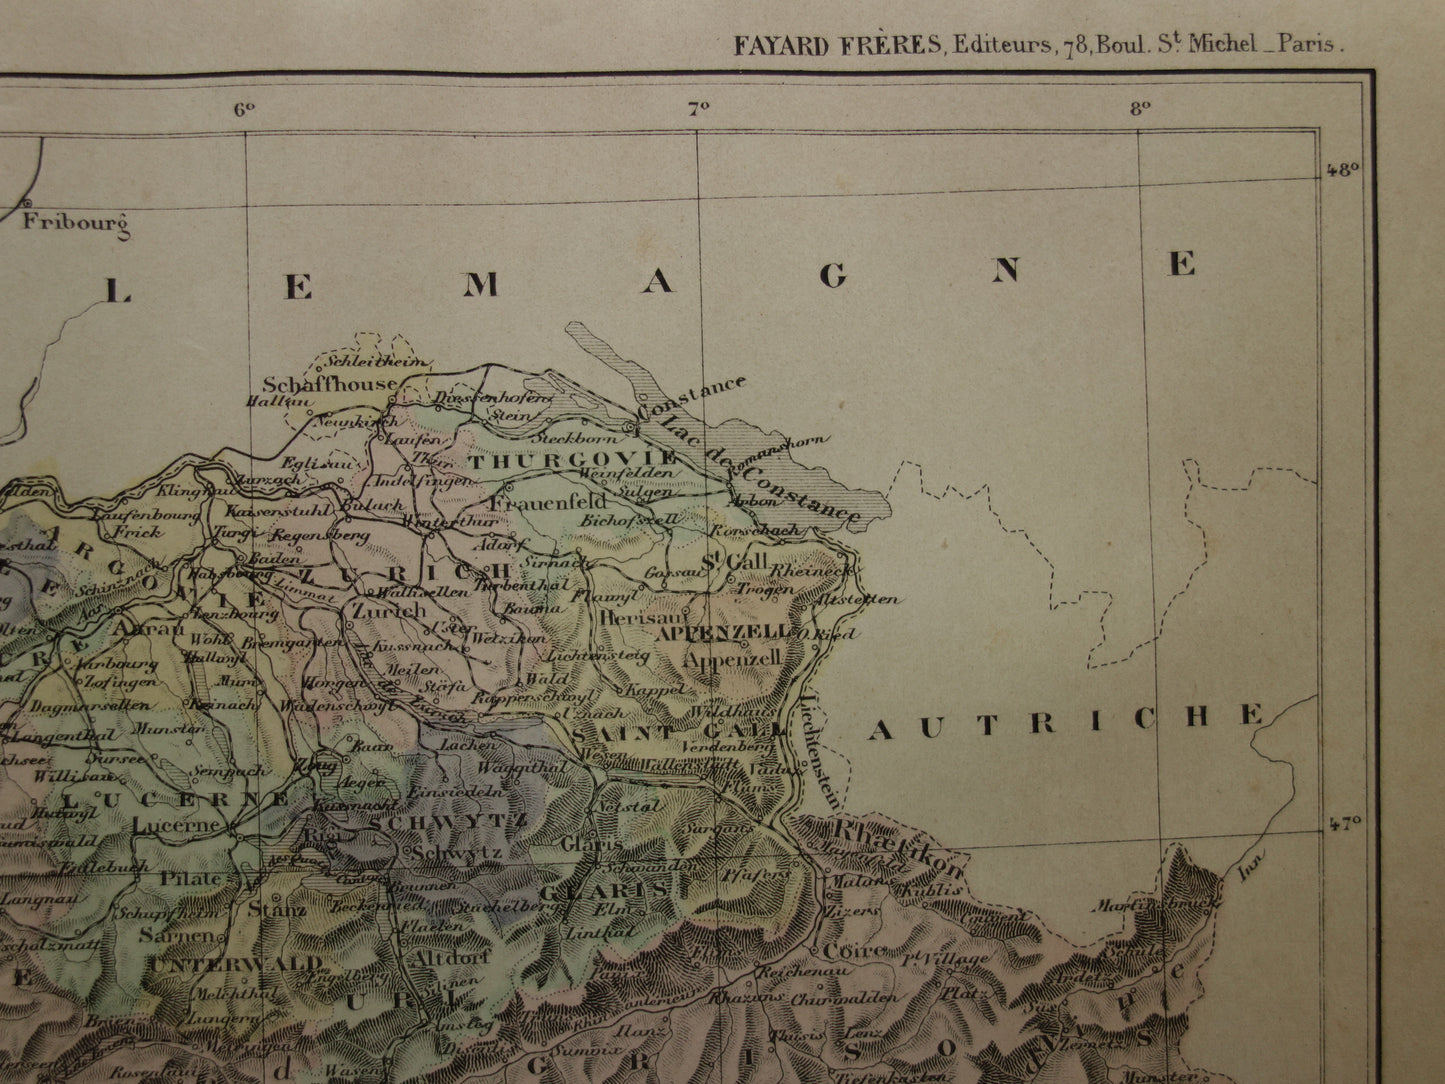 ZWITSERLAND oude landkaart van Zwitserland uit het jaar 1896 origineel handgekleurde antieke kaart historische print Zwitserland